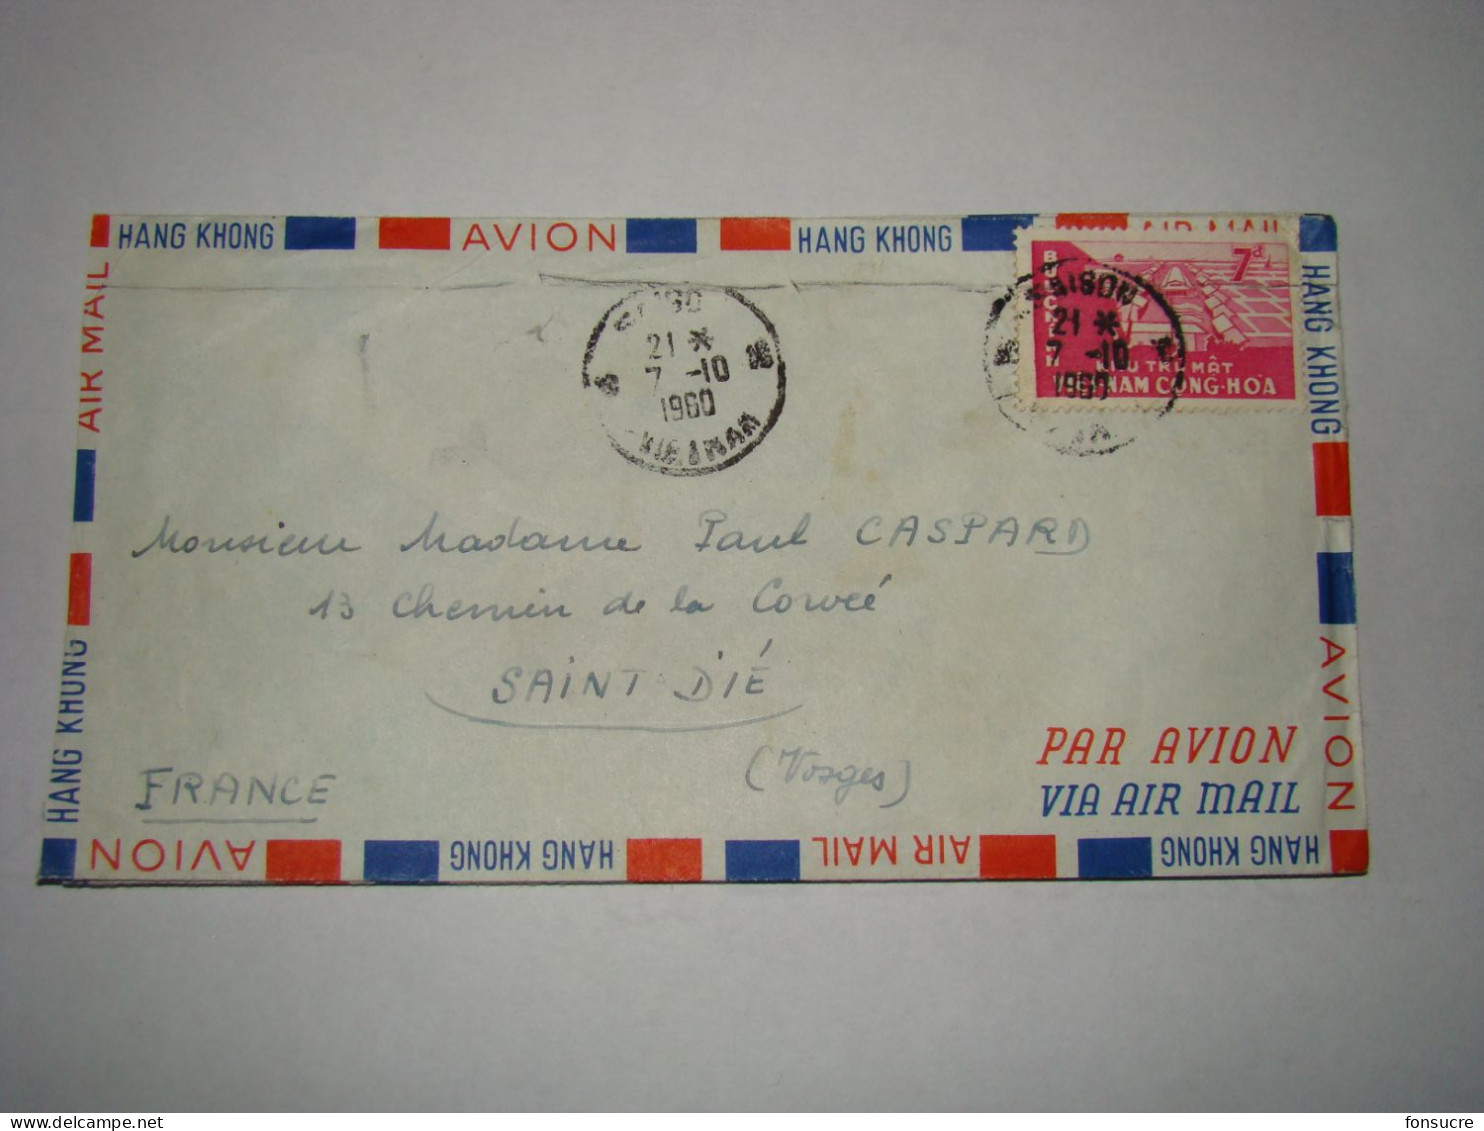 4253 Lettre Par Avion Air Mail Hang Khong Saïgon Viêt-Nam Cong-Hoa Buu-Ching Pour St Dié Vosges France 7/10/1960 - Vietnam